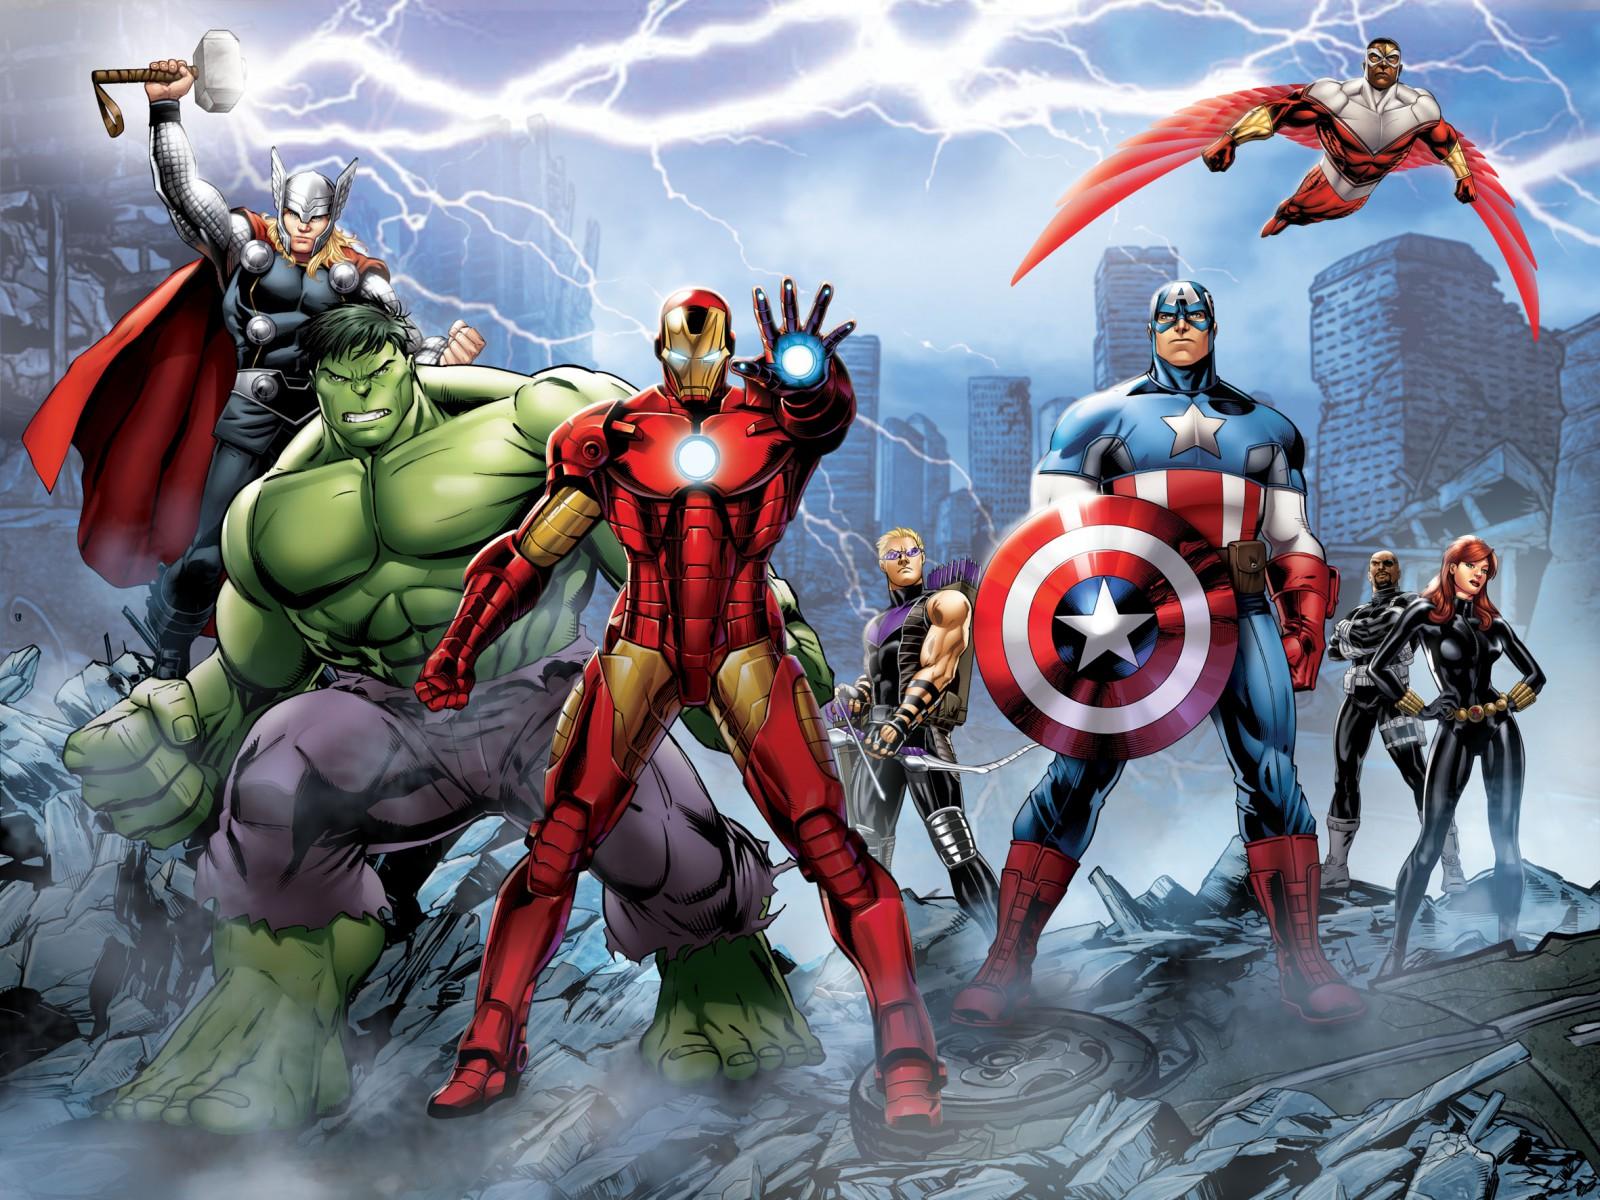 XXL Photo Wallpaper Mural Marvel The Avengers Hulk Thor